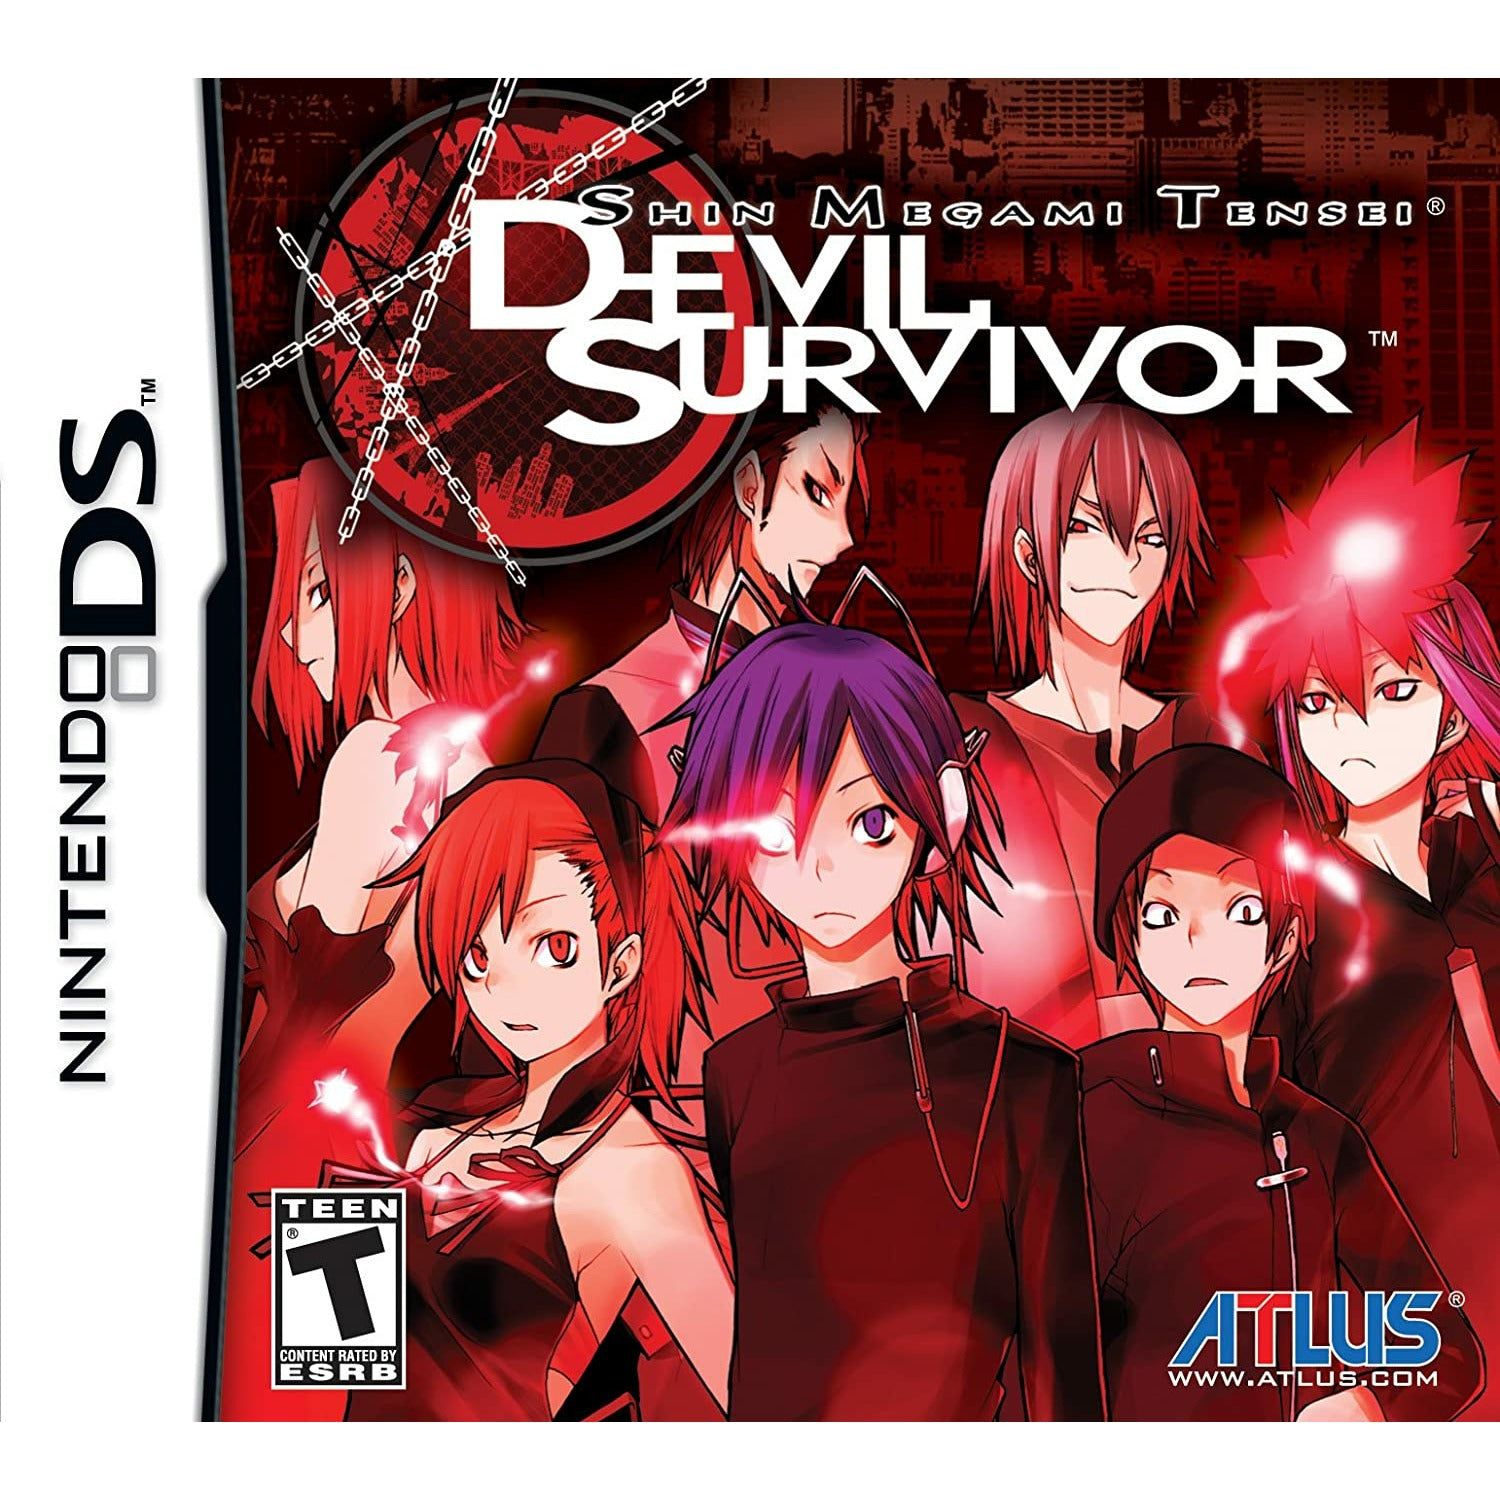 DS - Shin Megami Tensei Devil Survivor (In Case)